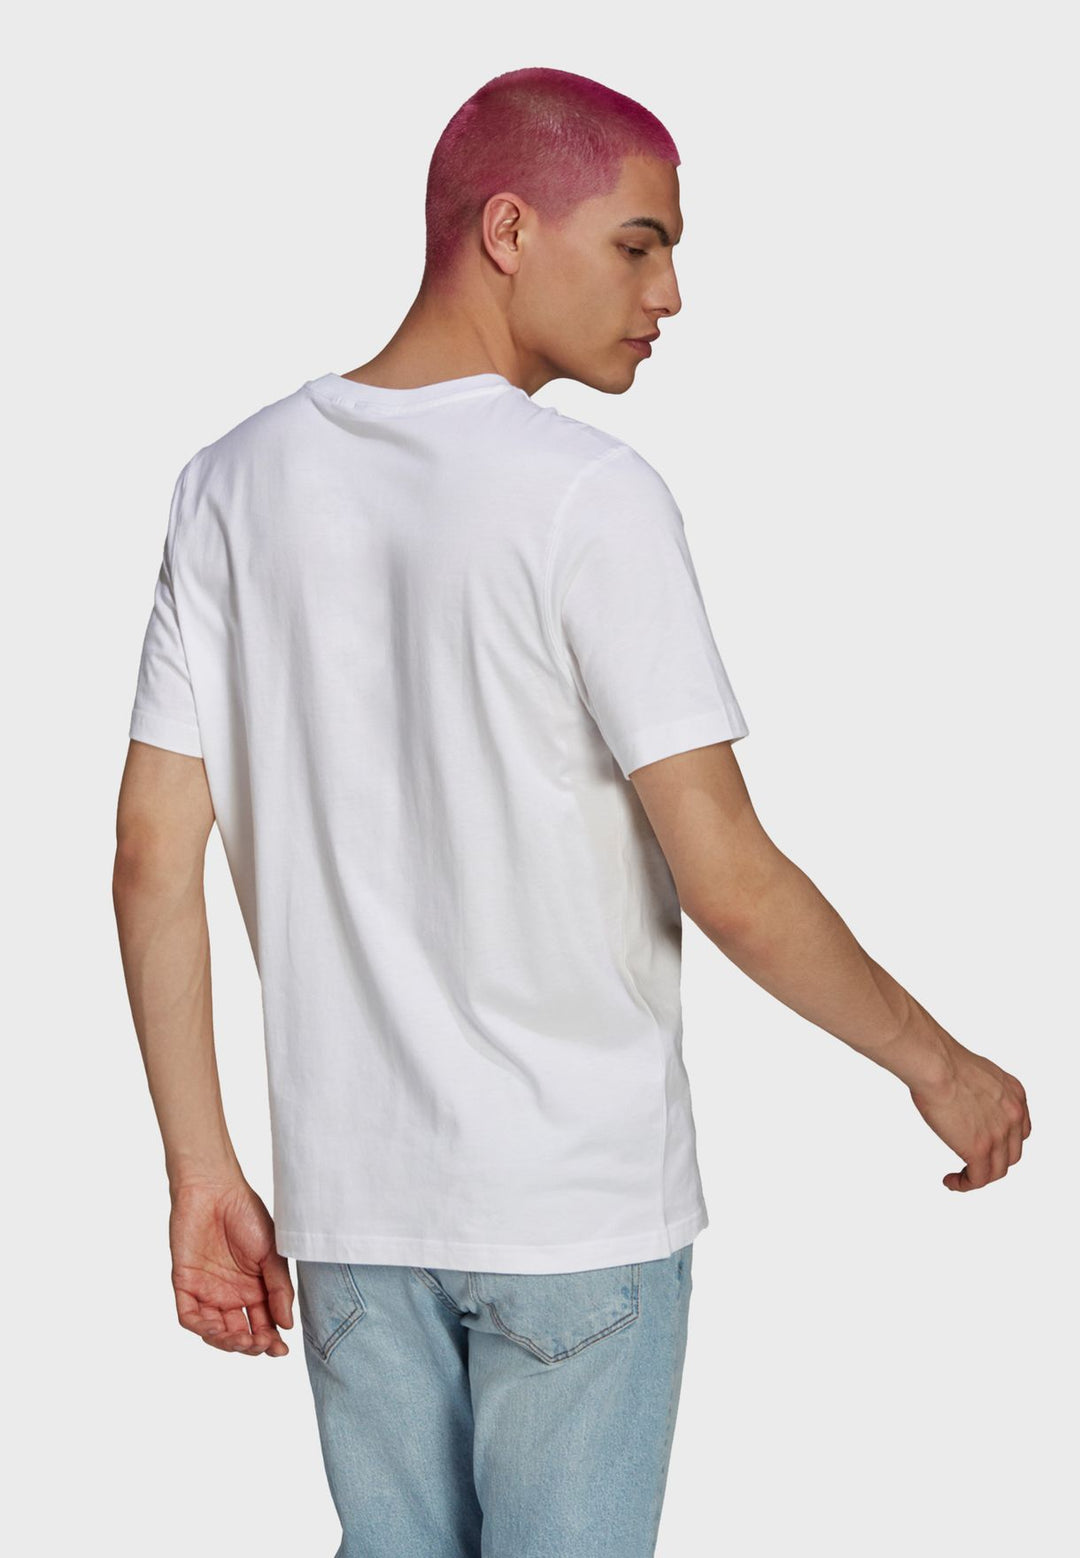 Adidas Originals White Worm Chest T-Shirt Size XL - 3alababak